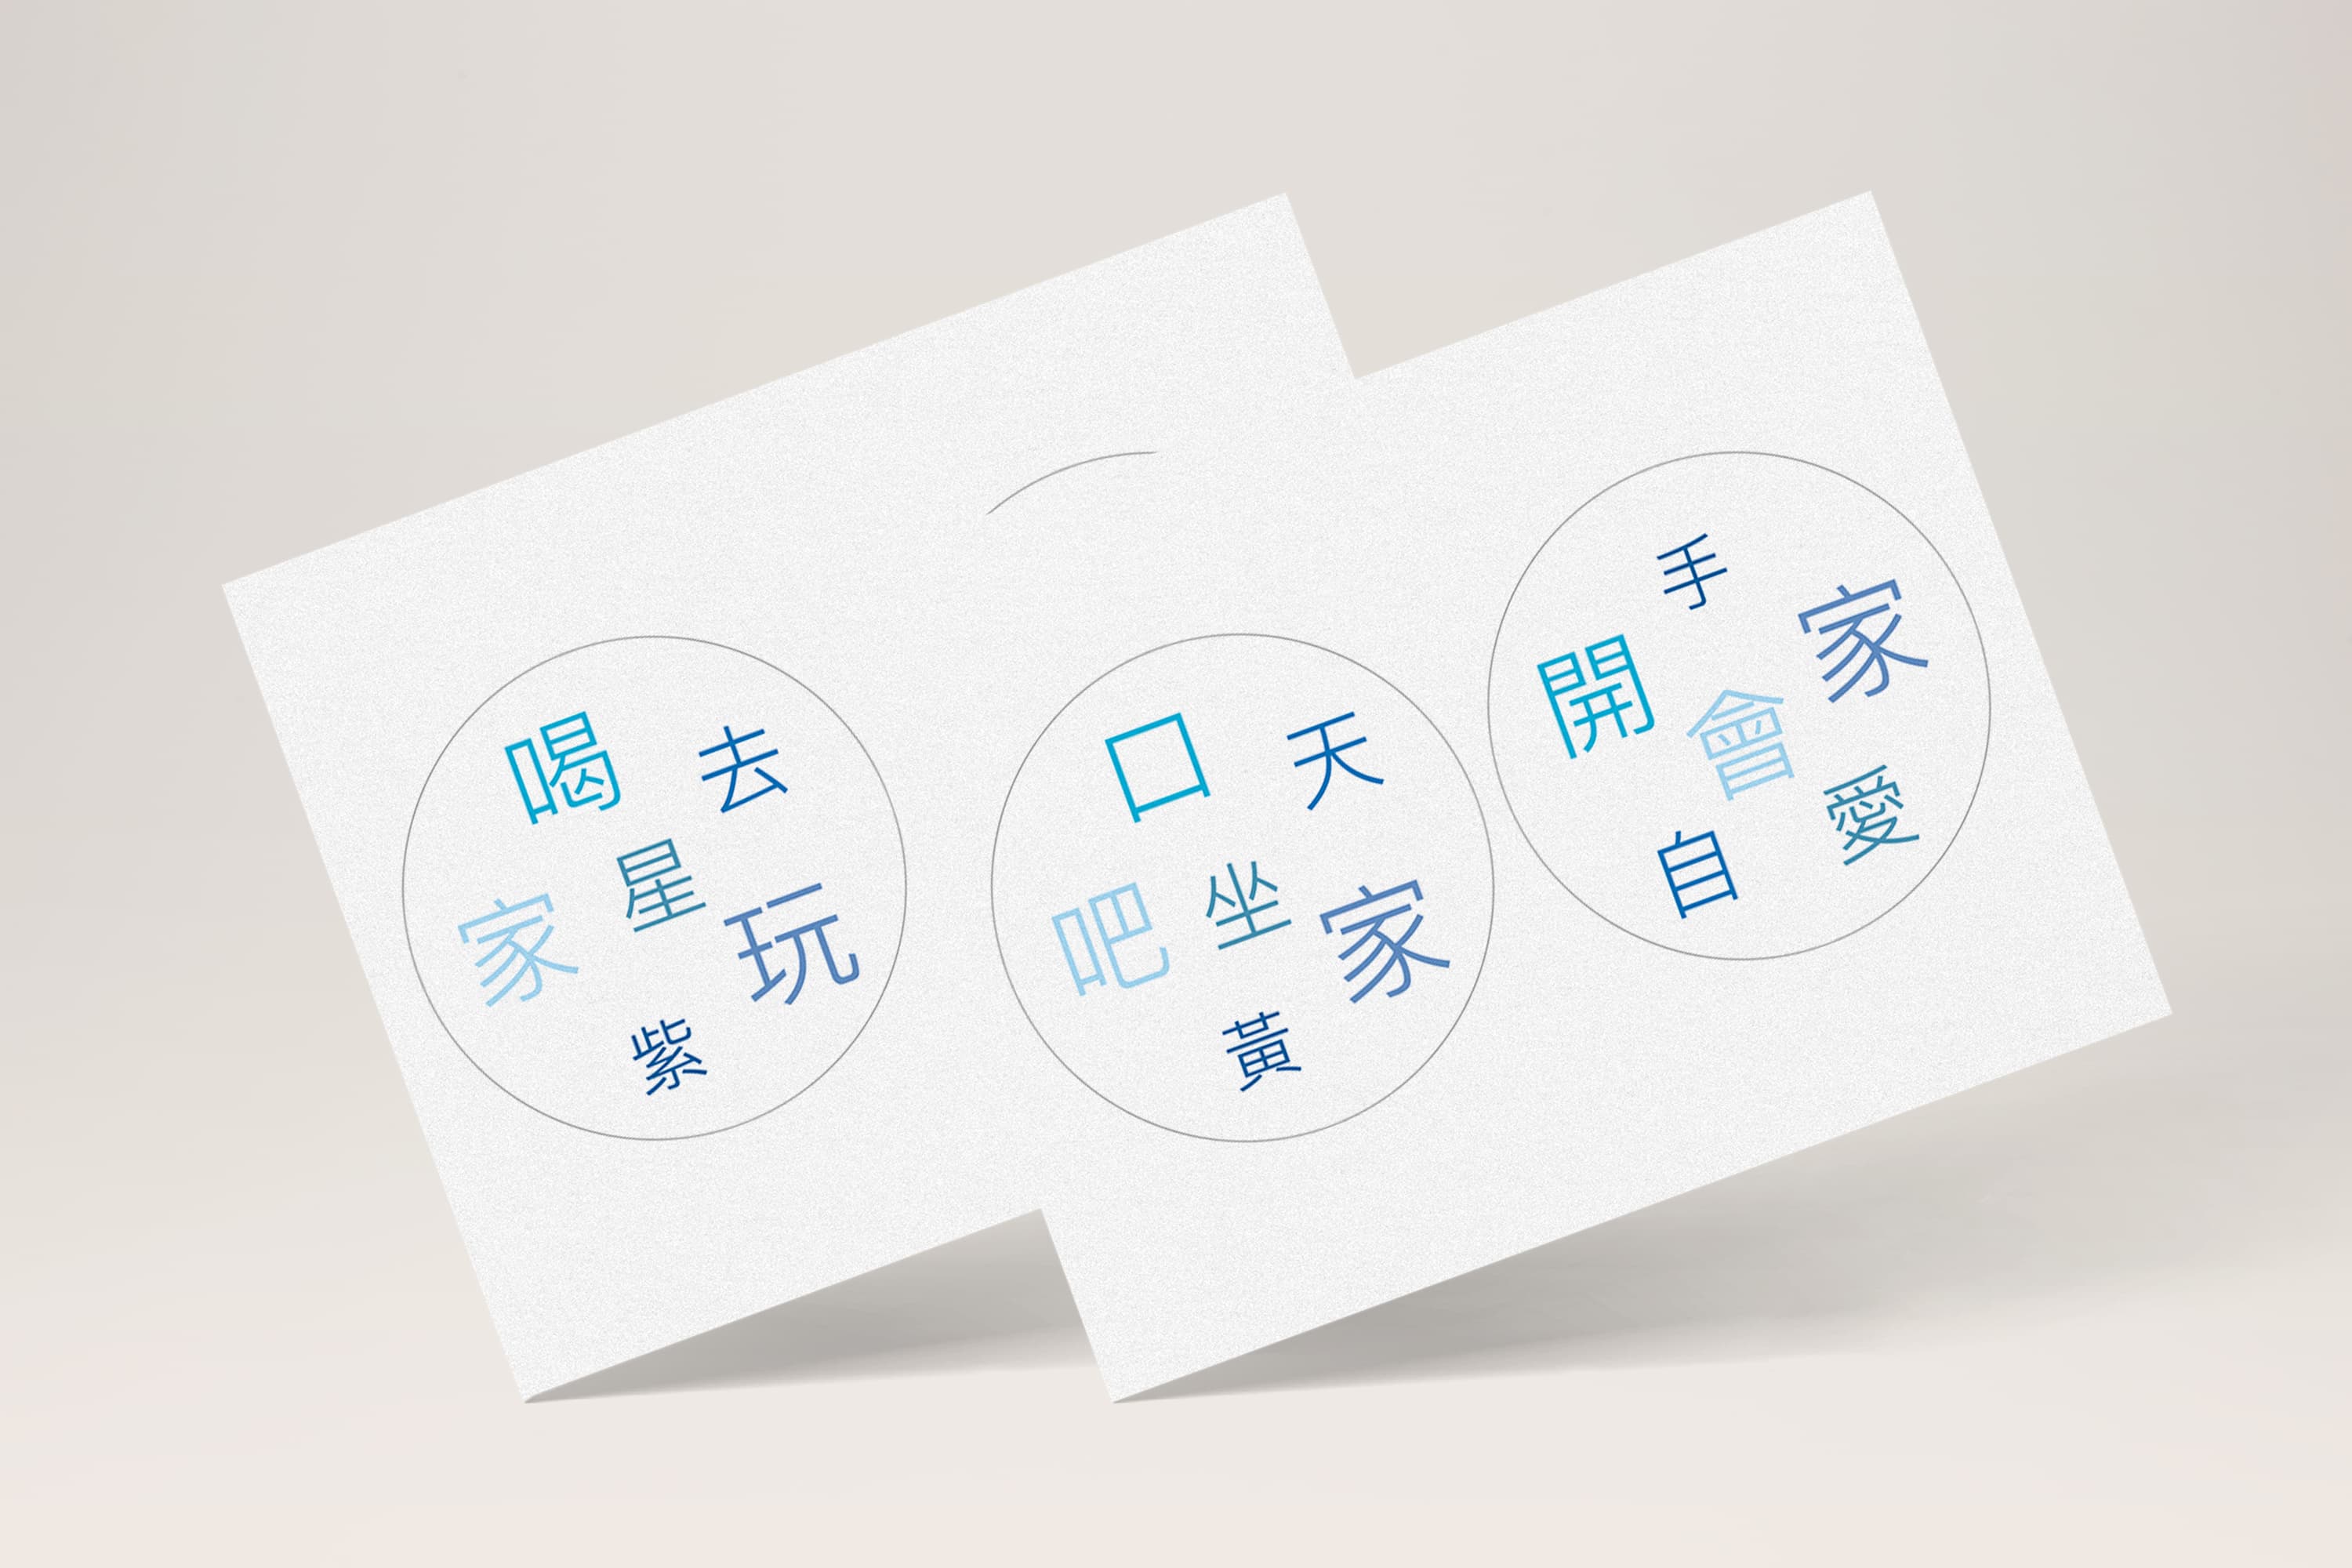 DIY 自製中文字多寶牌 遊戲（免費圖檔分享）